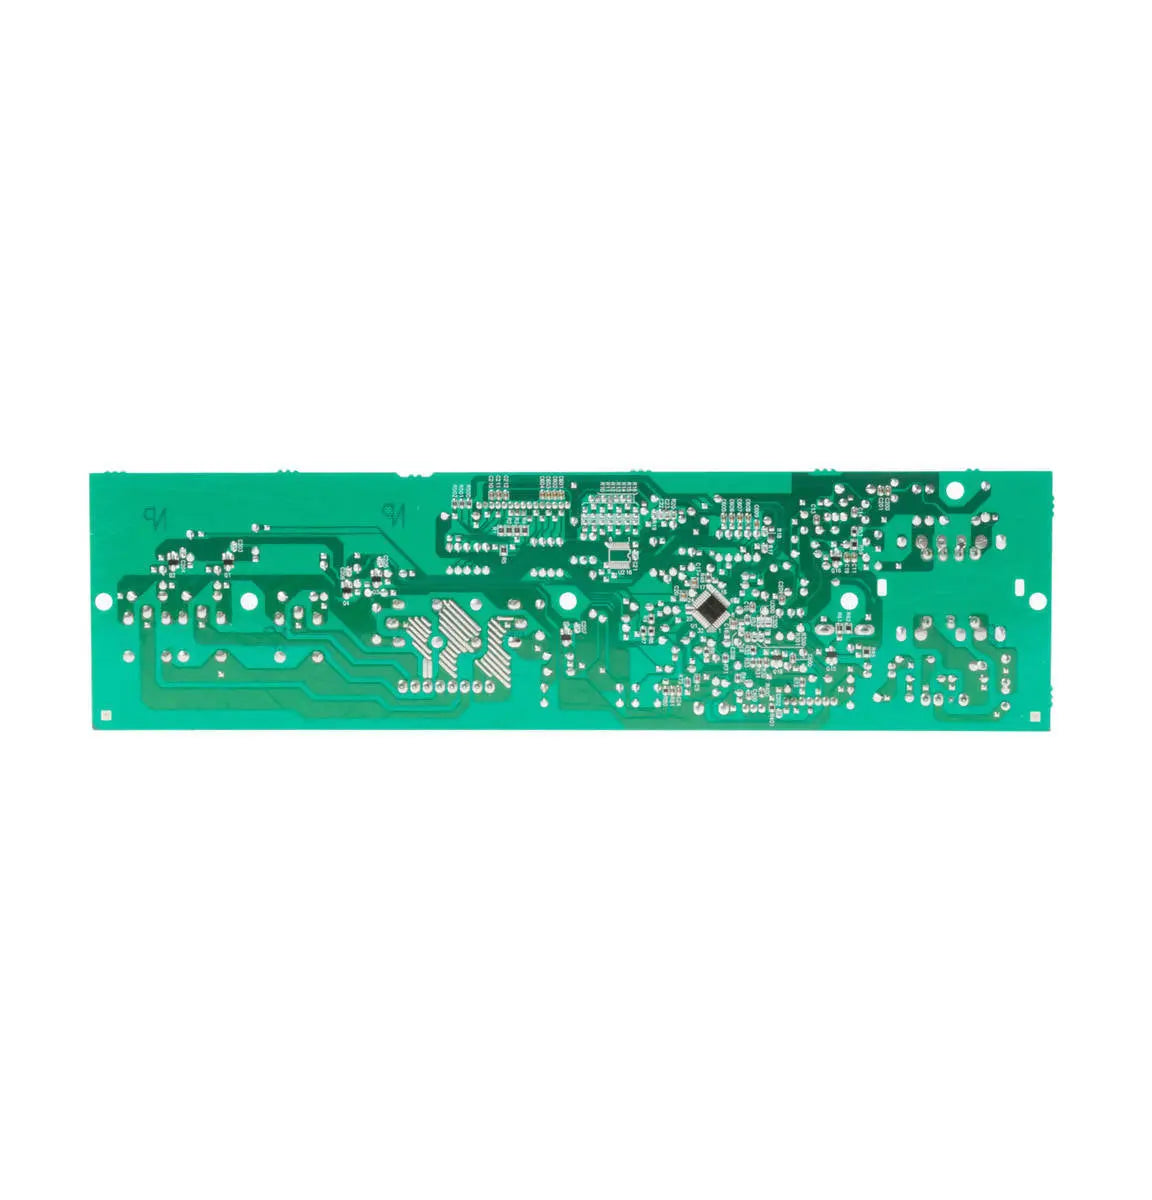 GE Dishwasher Electronic Control Board Kit - WG01A00138, Replaces: 1256953 AH10054667 AH1481914 AP3958565 EA10054667 EA1481914 EAP10054667 EAP1481914 PS10054667 PS1481914 WD21X10226 WD21X10227 WD21X10228 WD21X10237 WD21X10247 WD21X10251 WD21X10259 OEM PARTS WORLD